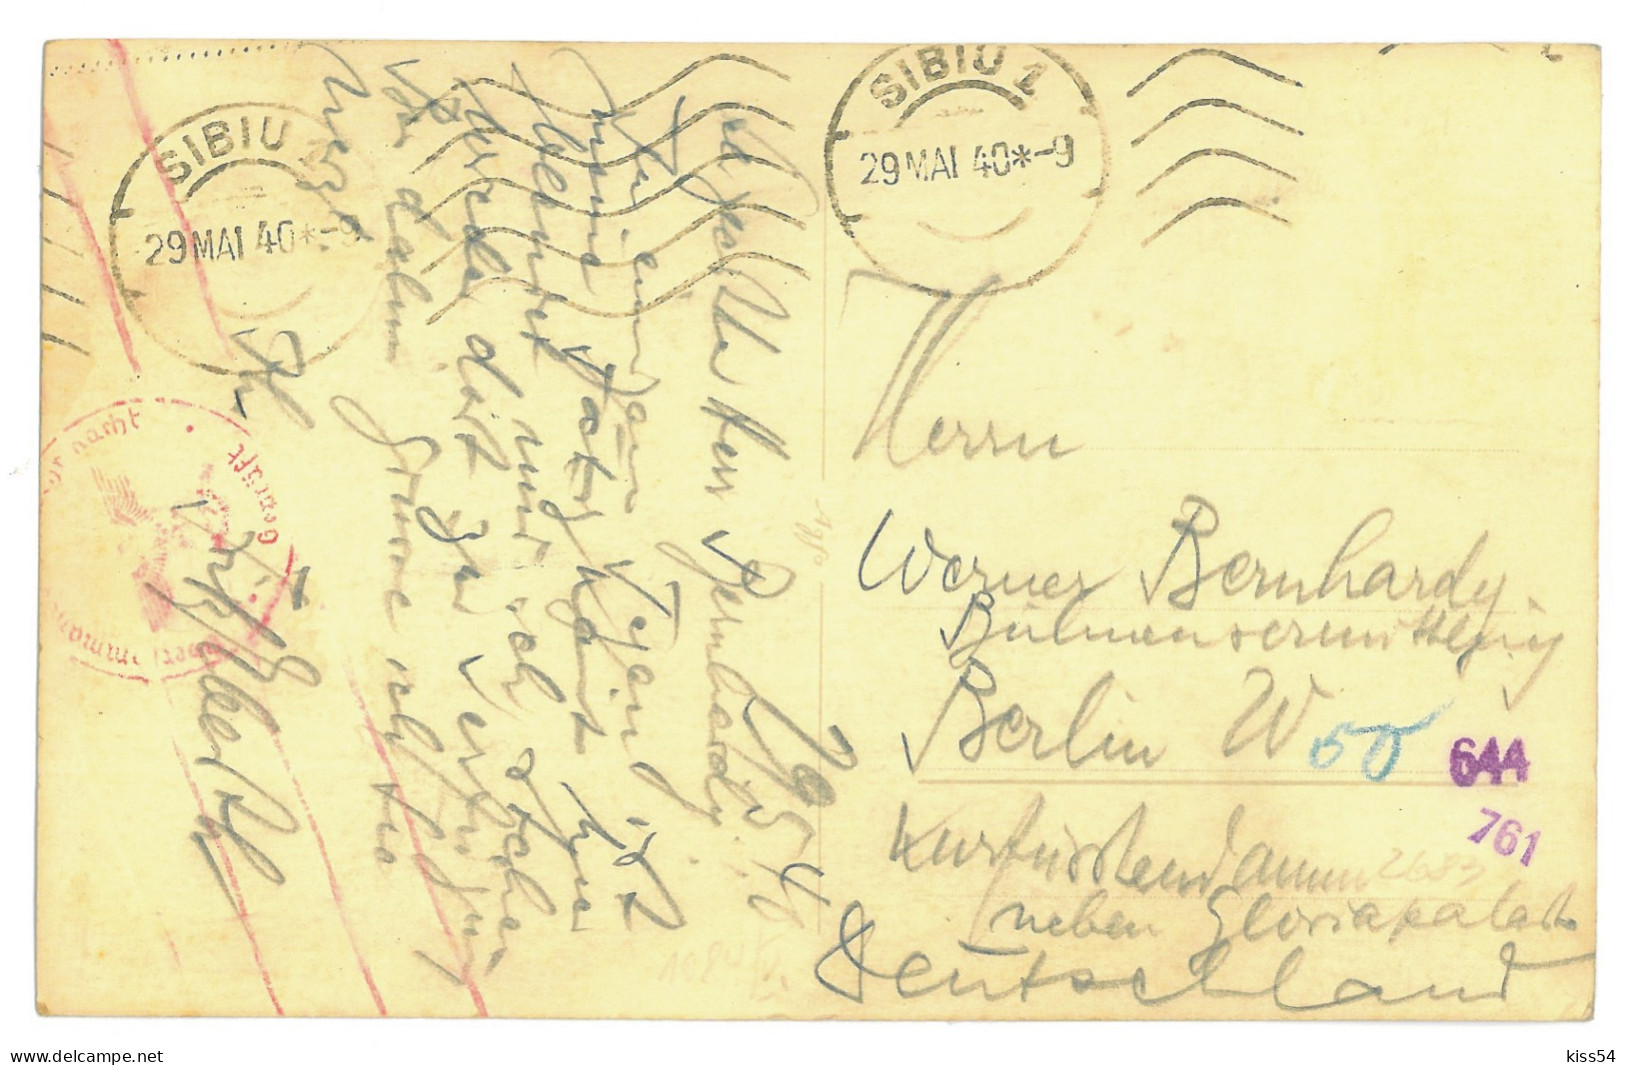 RO 81 - 16198 SIBIU, Romania - Old Postcard, CENSOR, Real PHOTO - Used - 1940 - Rumania